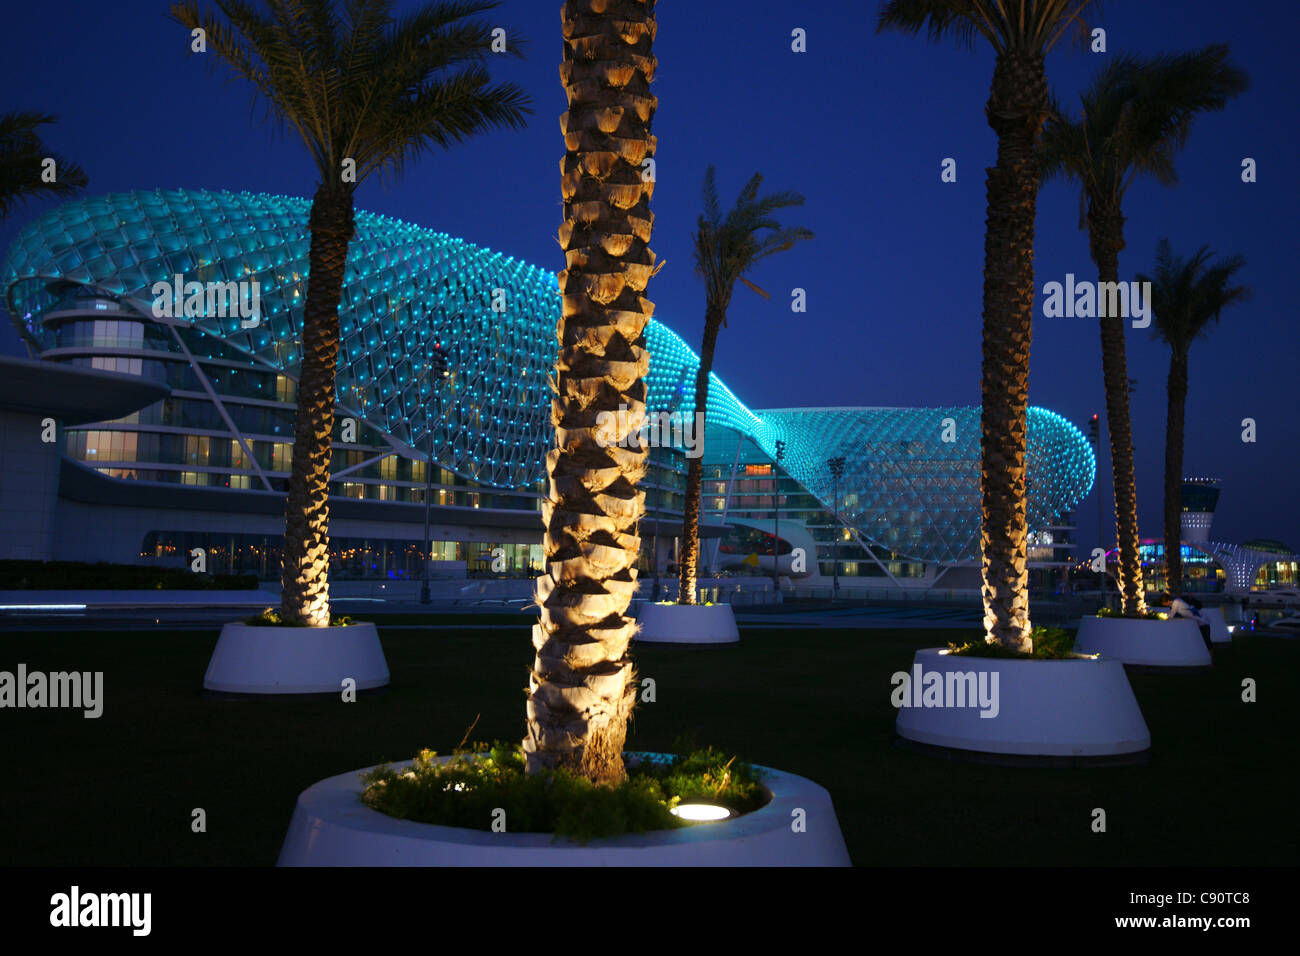 El Yas Hotel, un hotel construido a través de la F1, el Circuito Yas Marina Yas Island, Abu Dhabi, Emiratos Árabes Unidos, EAU Foto de stock